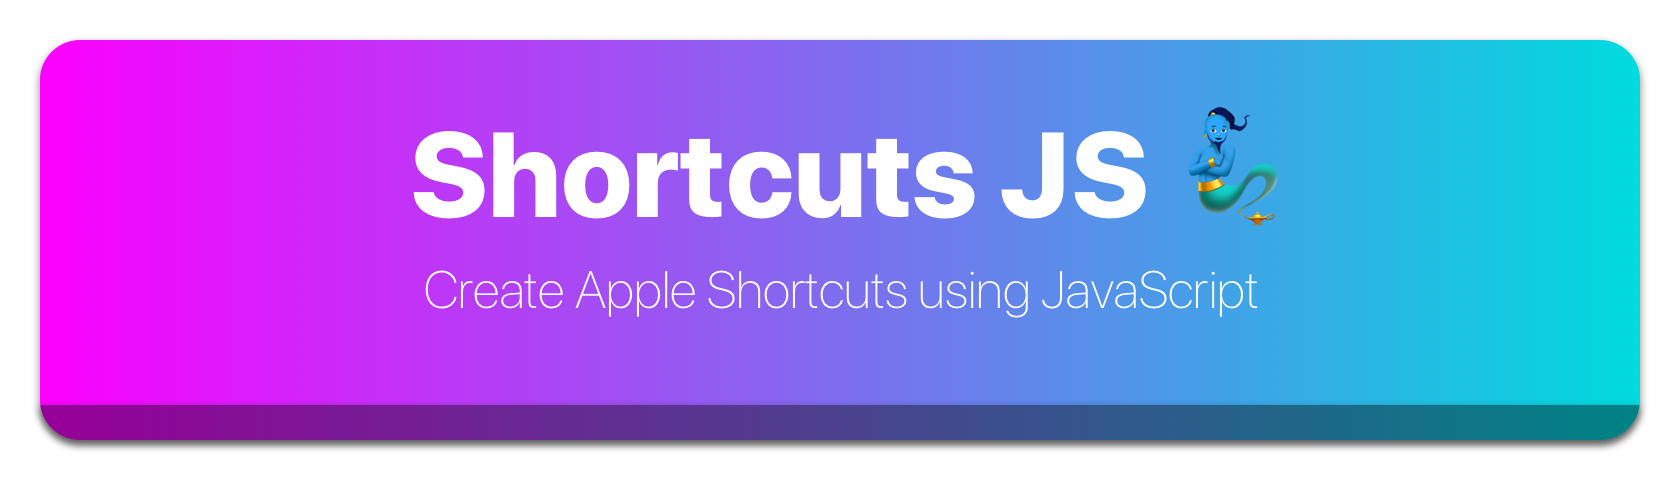 Shortcuts JS Logo